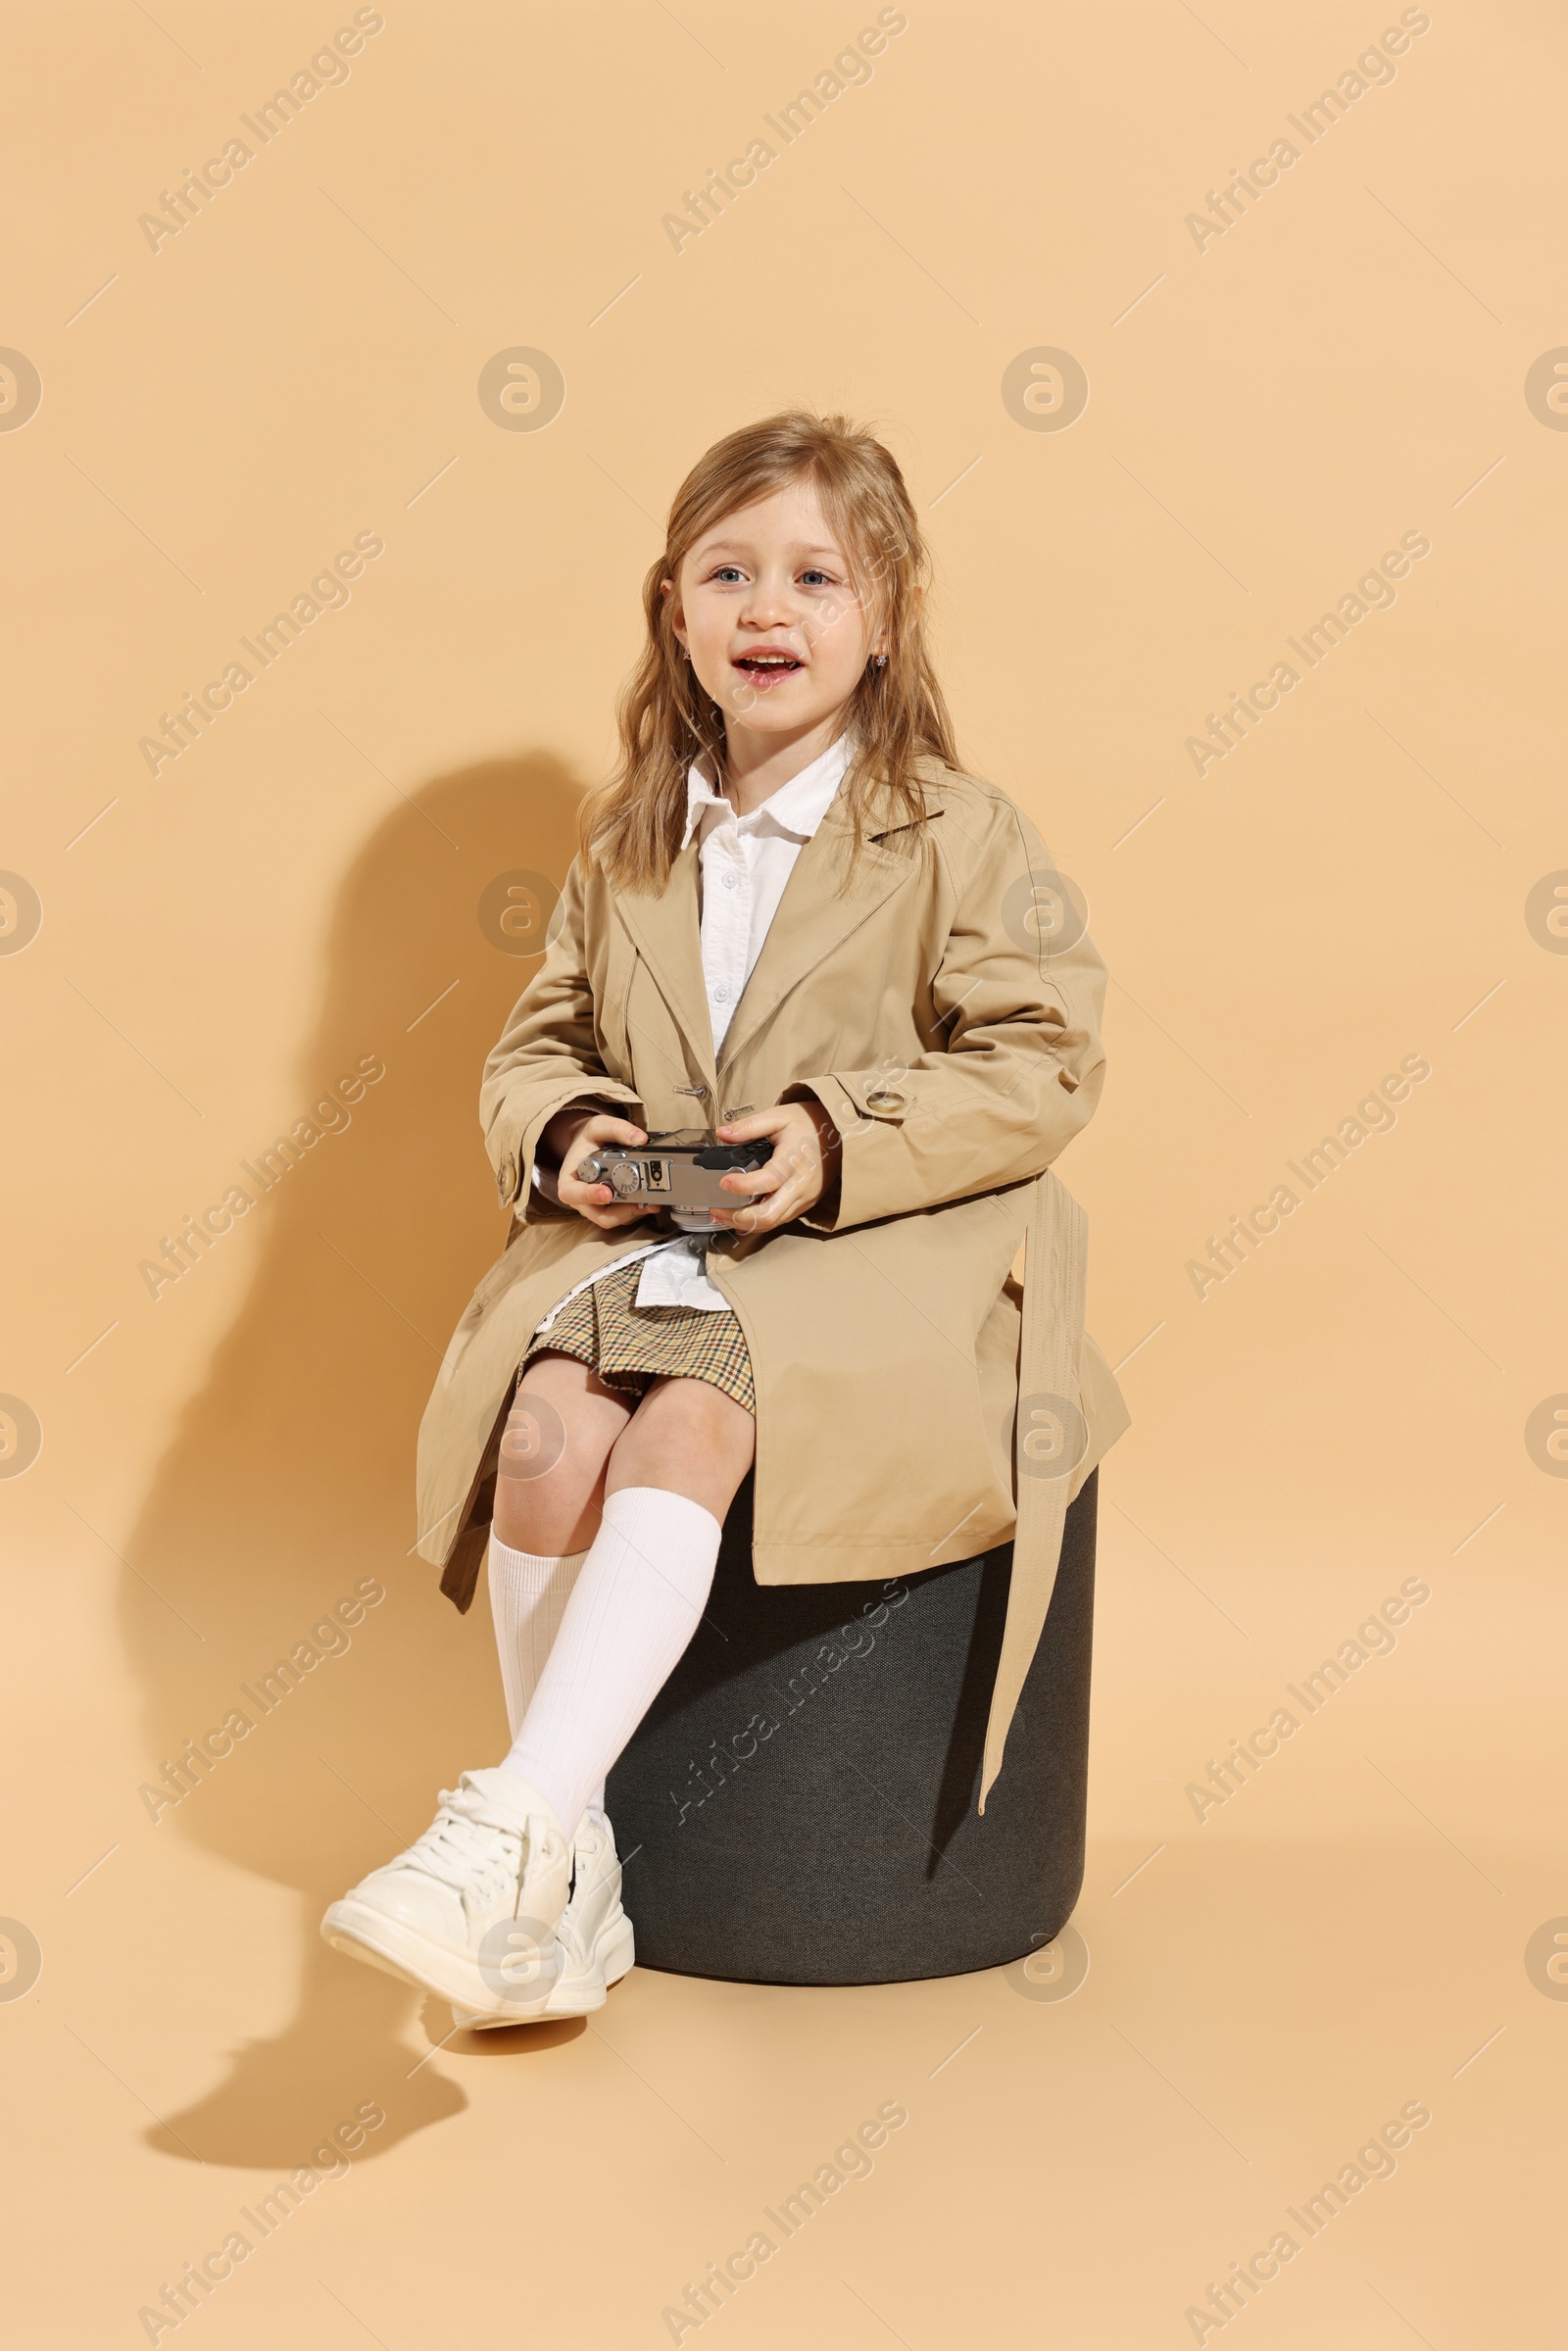 Photo of Fashion concept. Stylish girl with vintage camera on pale orange background